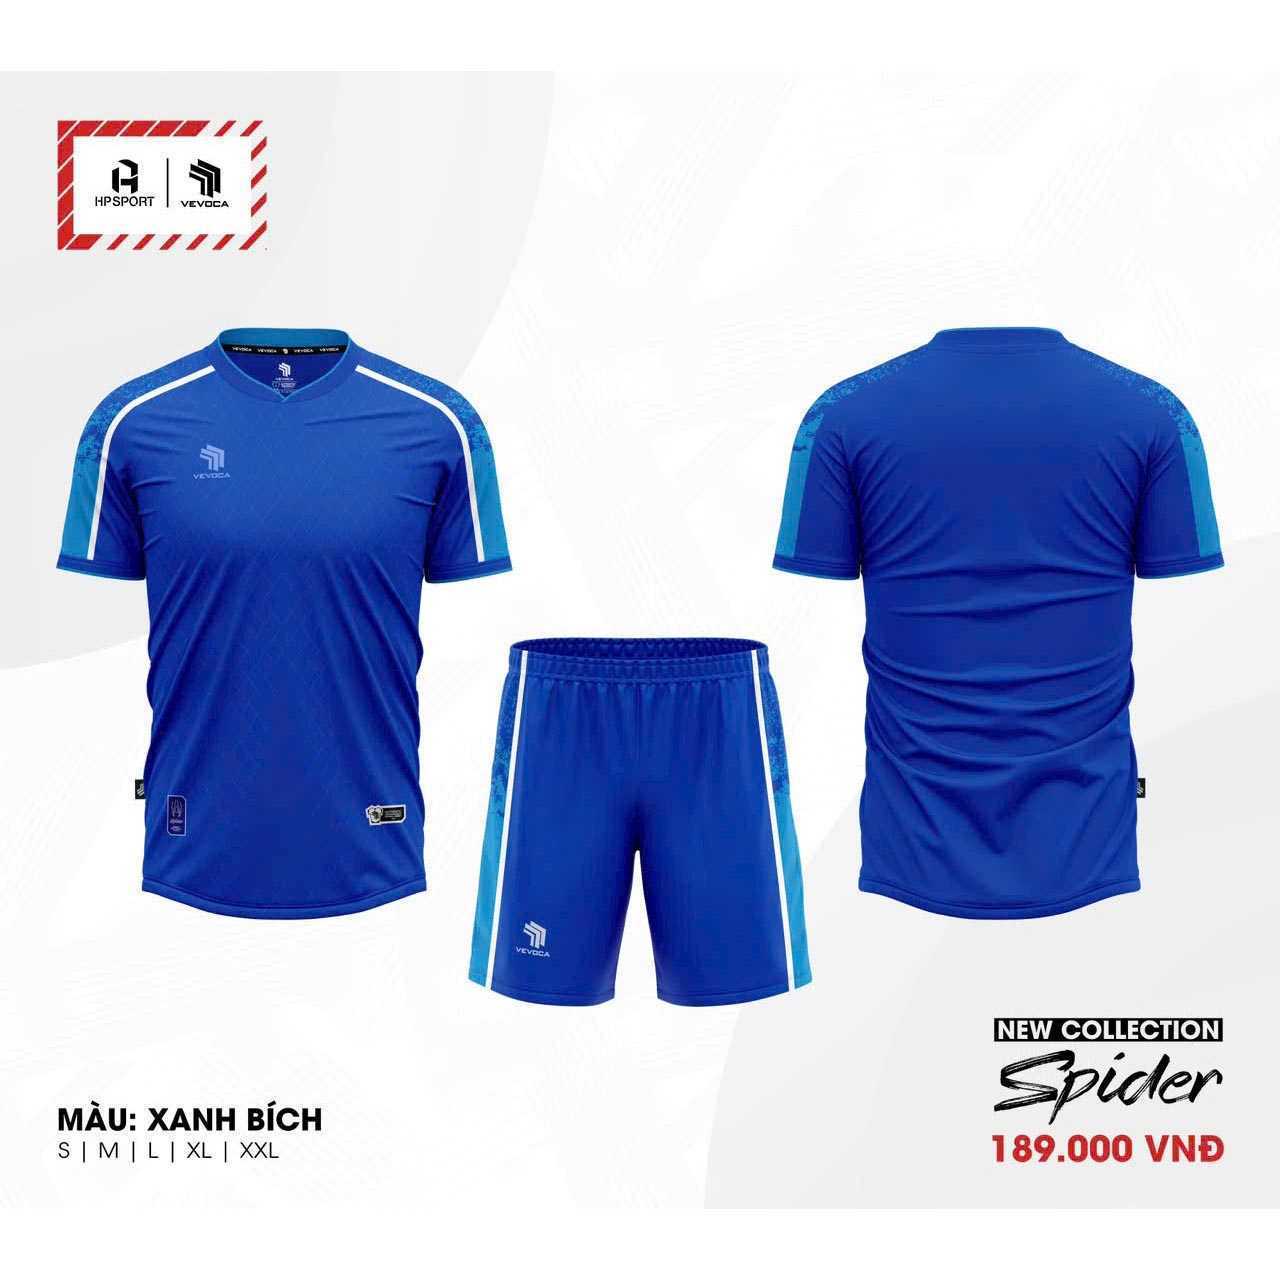 Bộ quần áo bóng đá phủi thiết kế Spider Vevoca chính hãng HP-Sport vải dệt kim nhiều màu xanh biển navy